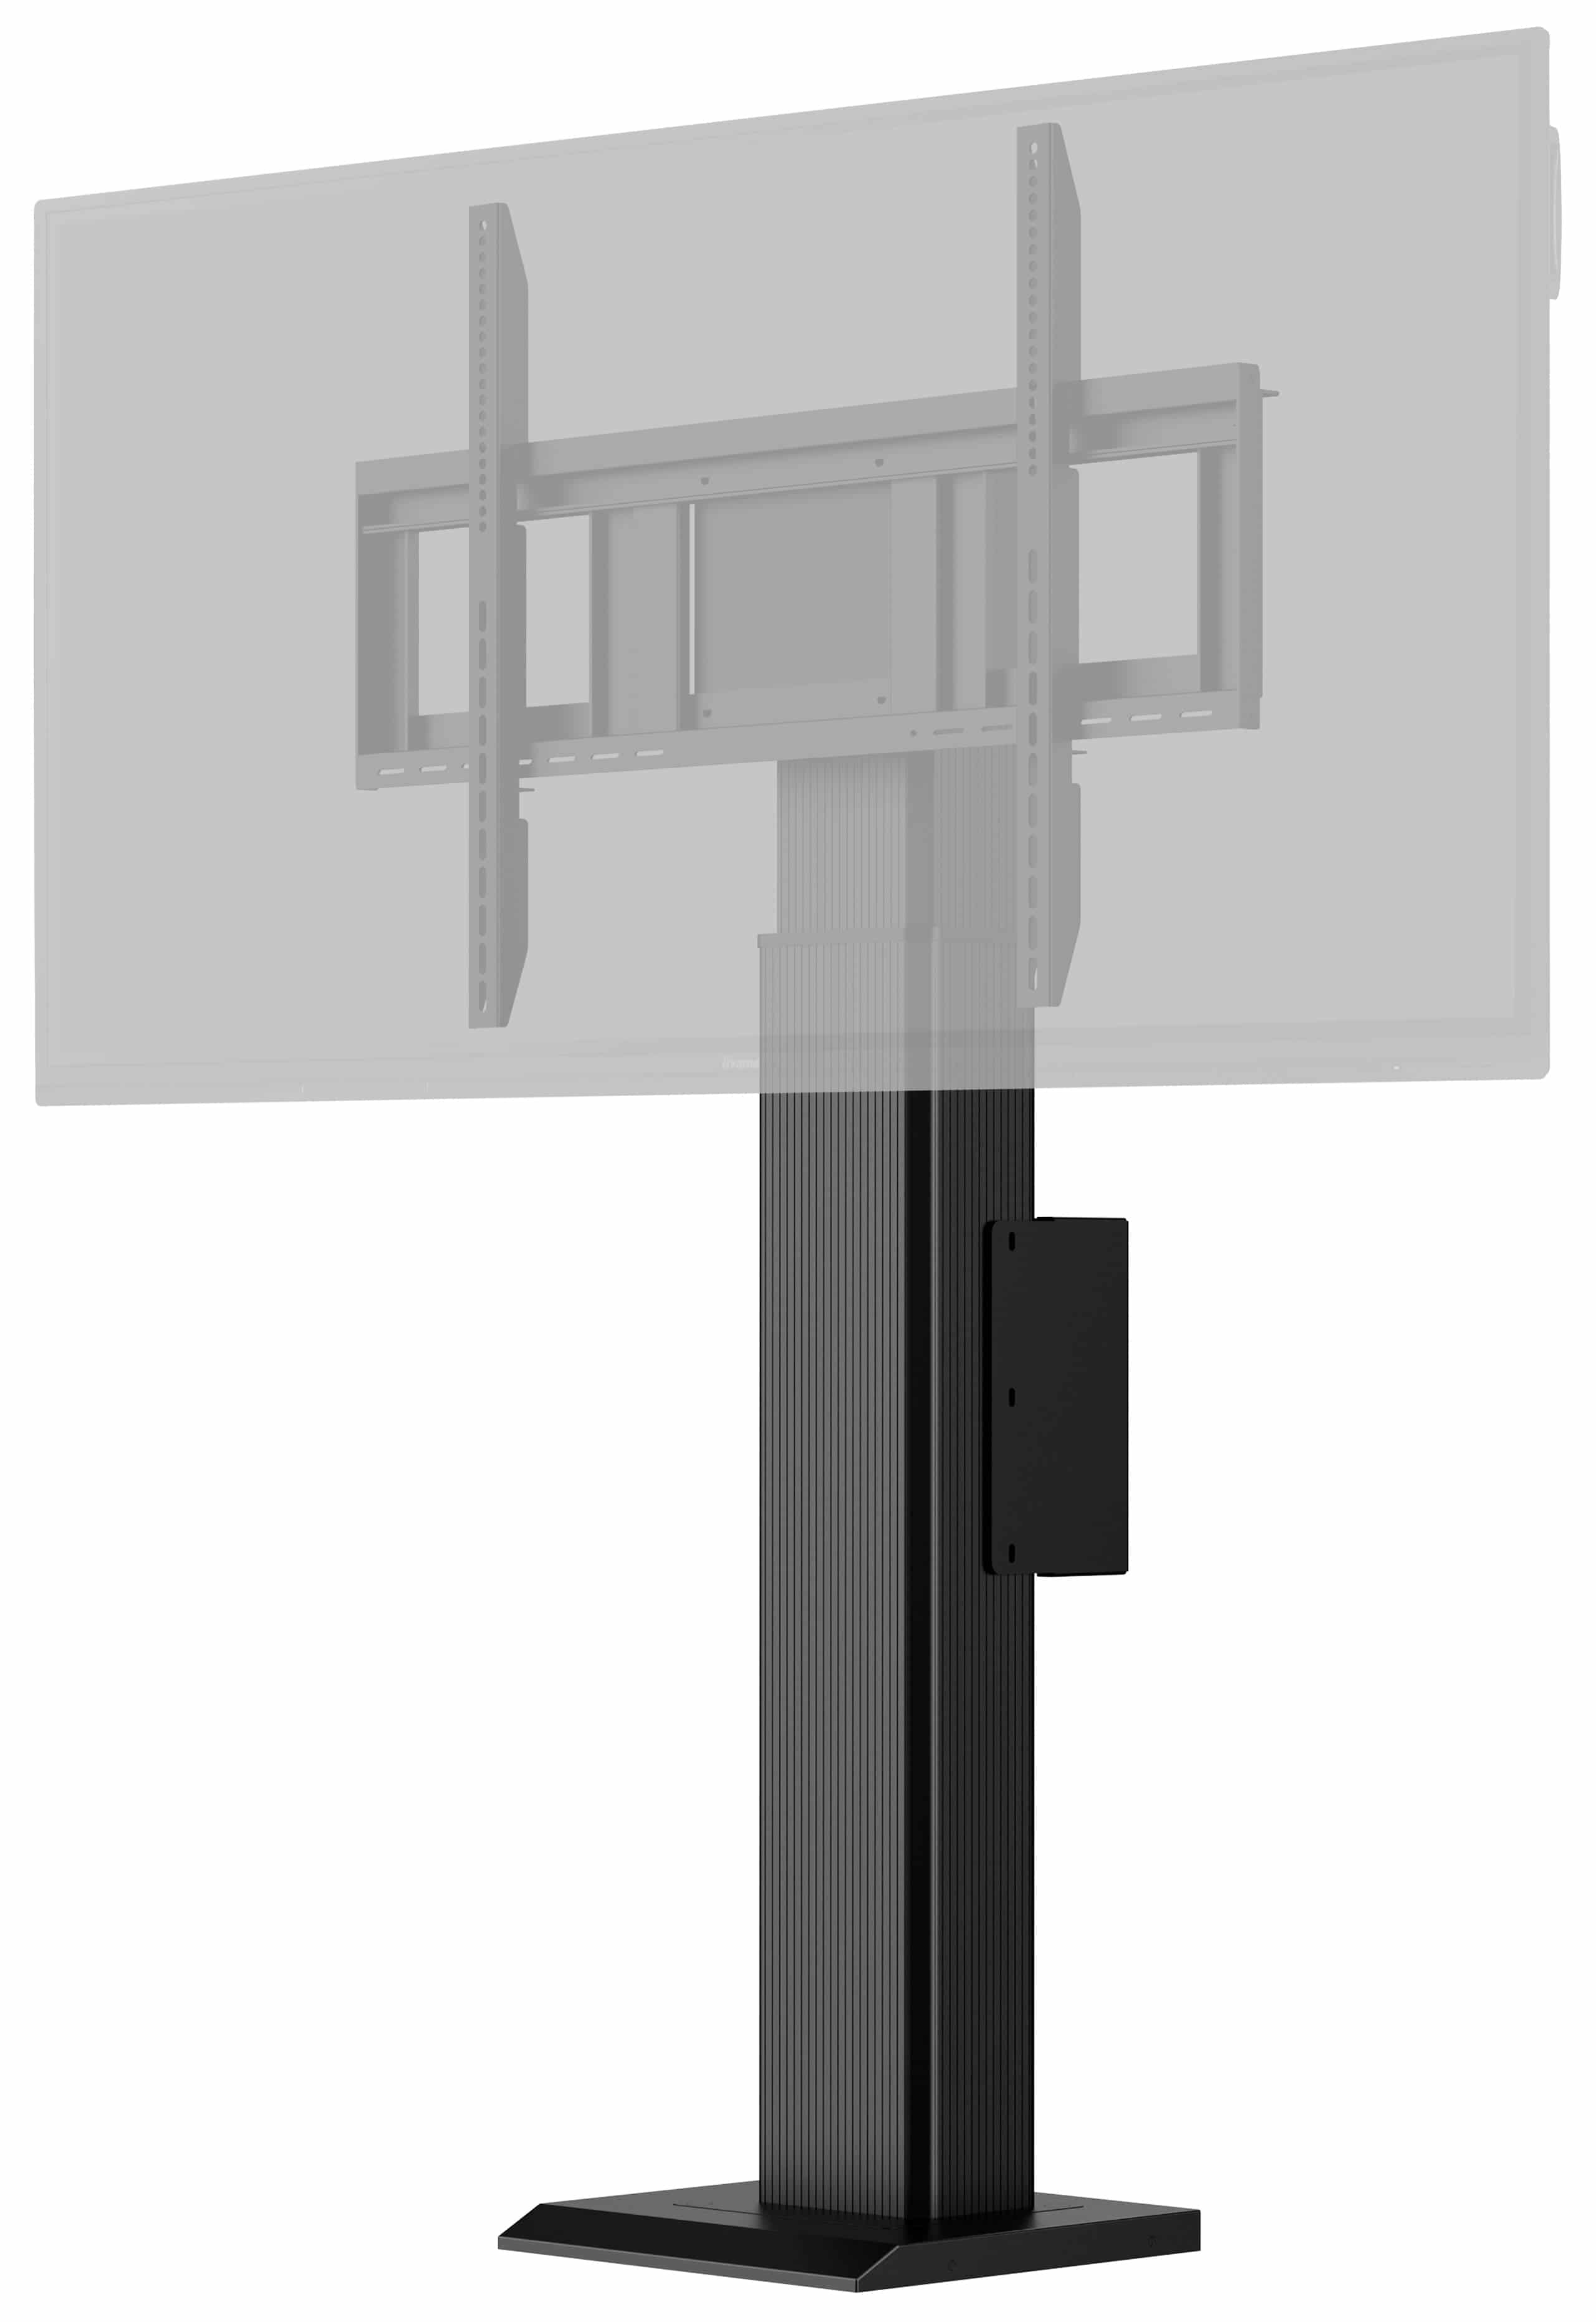 Iiyama MD WLIFT1021-B1 | Elektrisches Pylonensystem mit einer Säule für Displays von 55" bis 86"